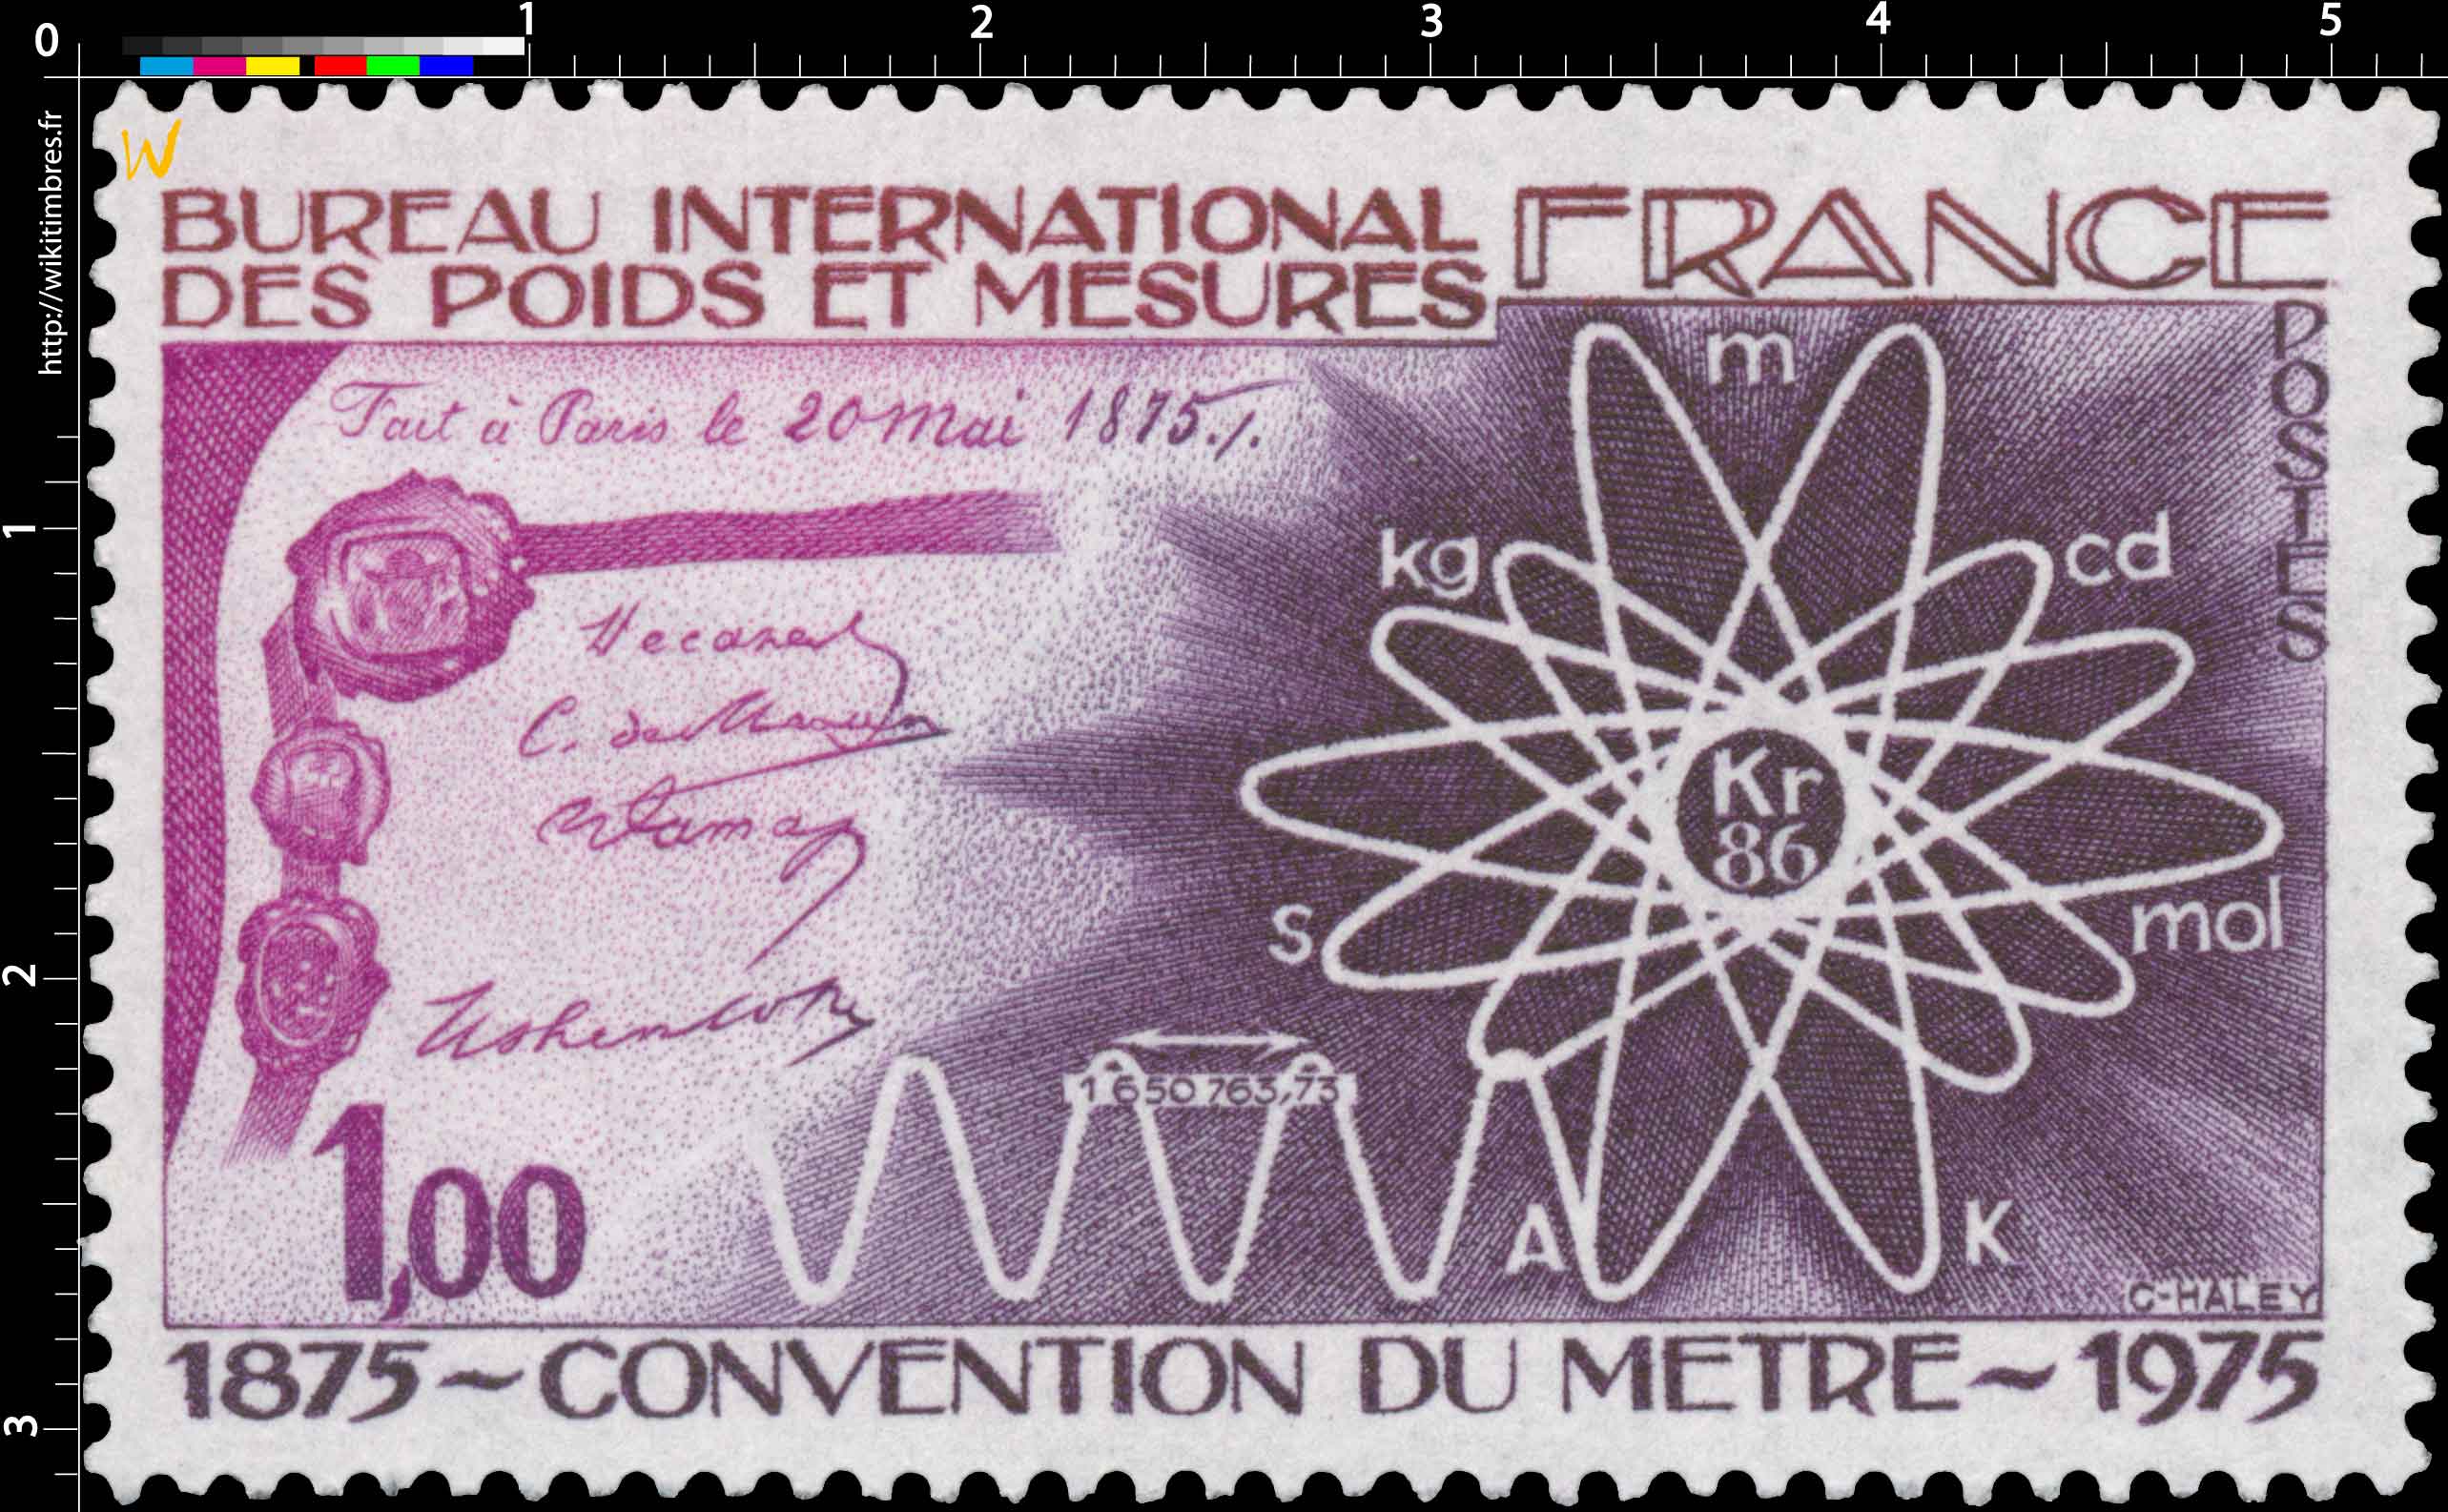 BUREAU INTERNATIONAL DES POIDS ET MESURES CONVENTION DU MÈTRE 1875-1975 Fait à Paris le 20 mai 1875